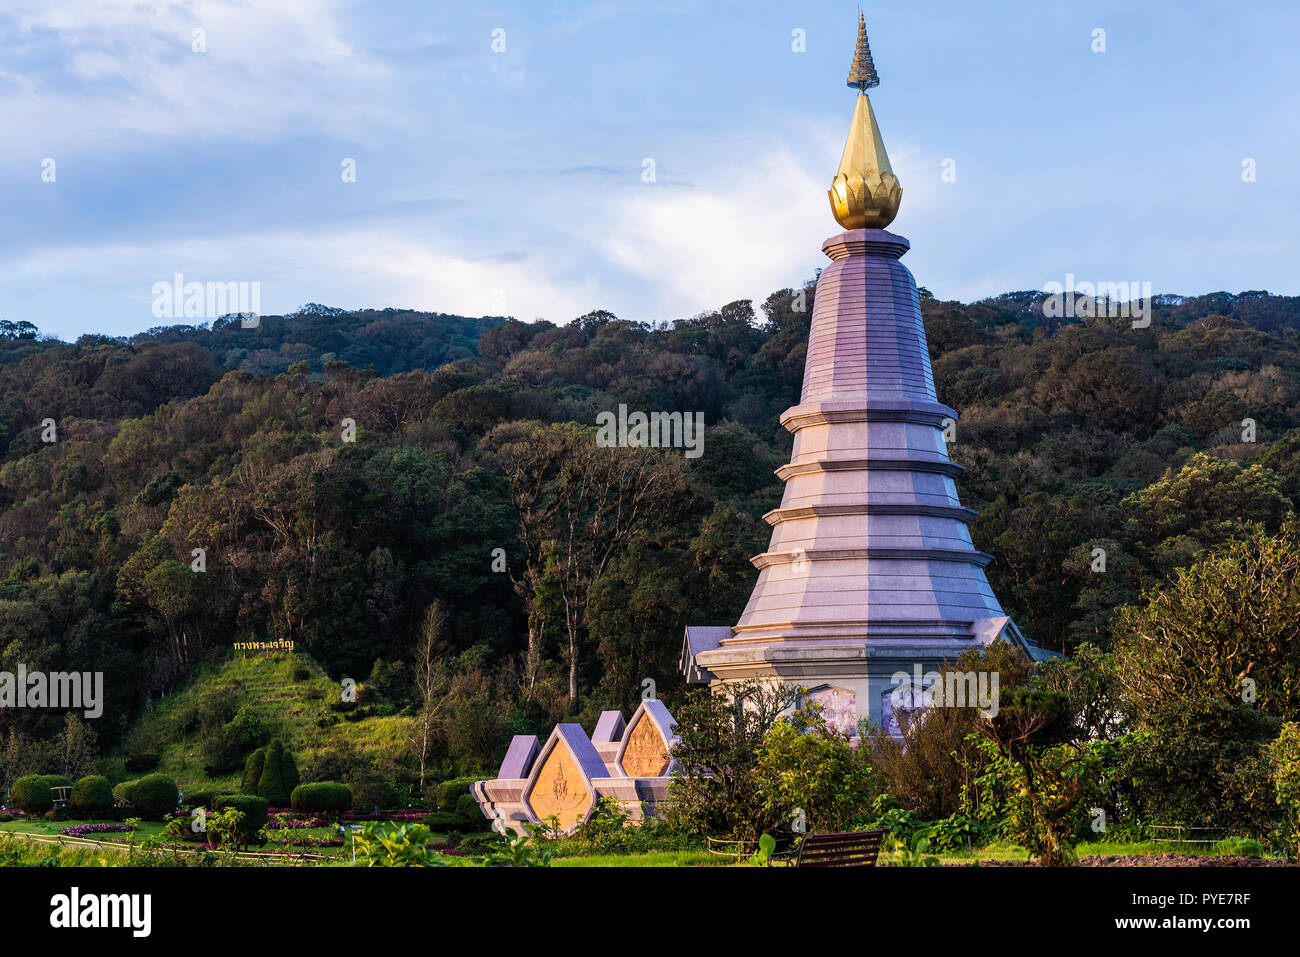 Phra Maha Chedi Doi Inthanon Chiang Mai Thailand Stock Photo